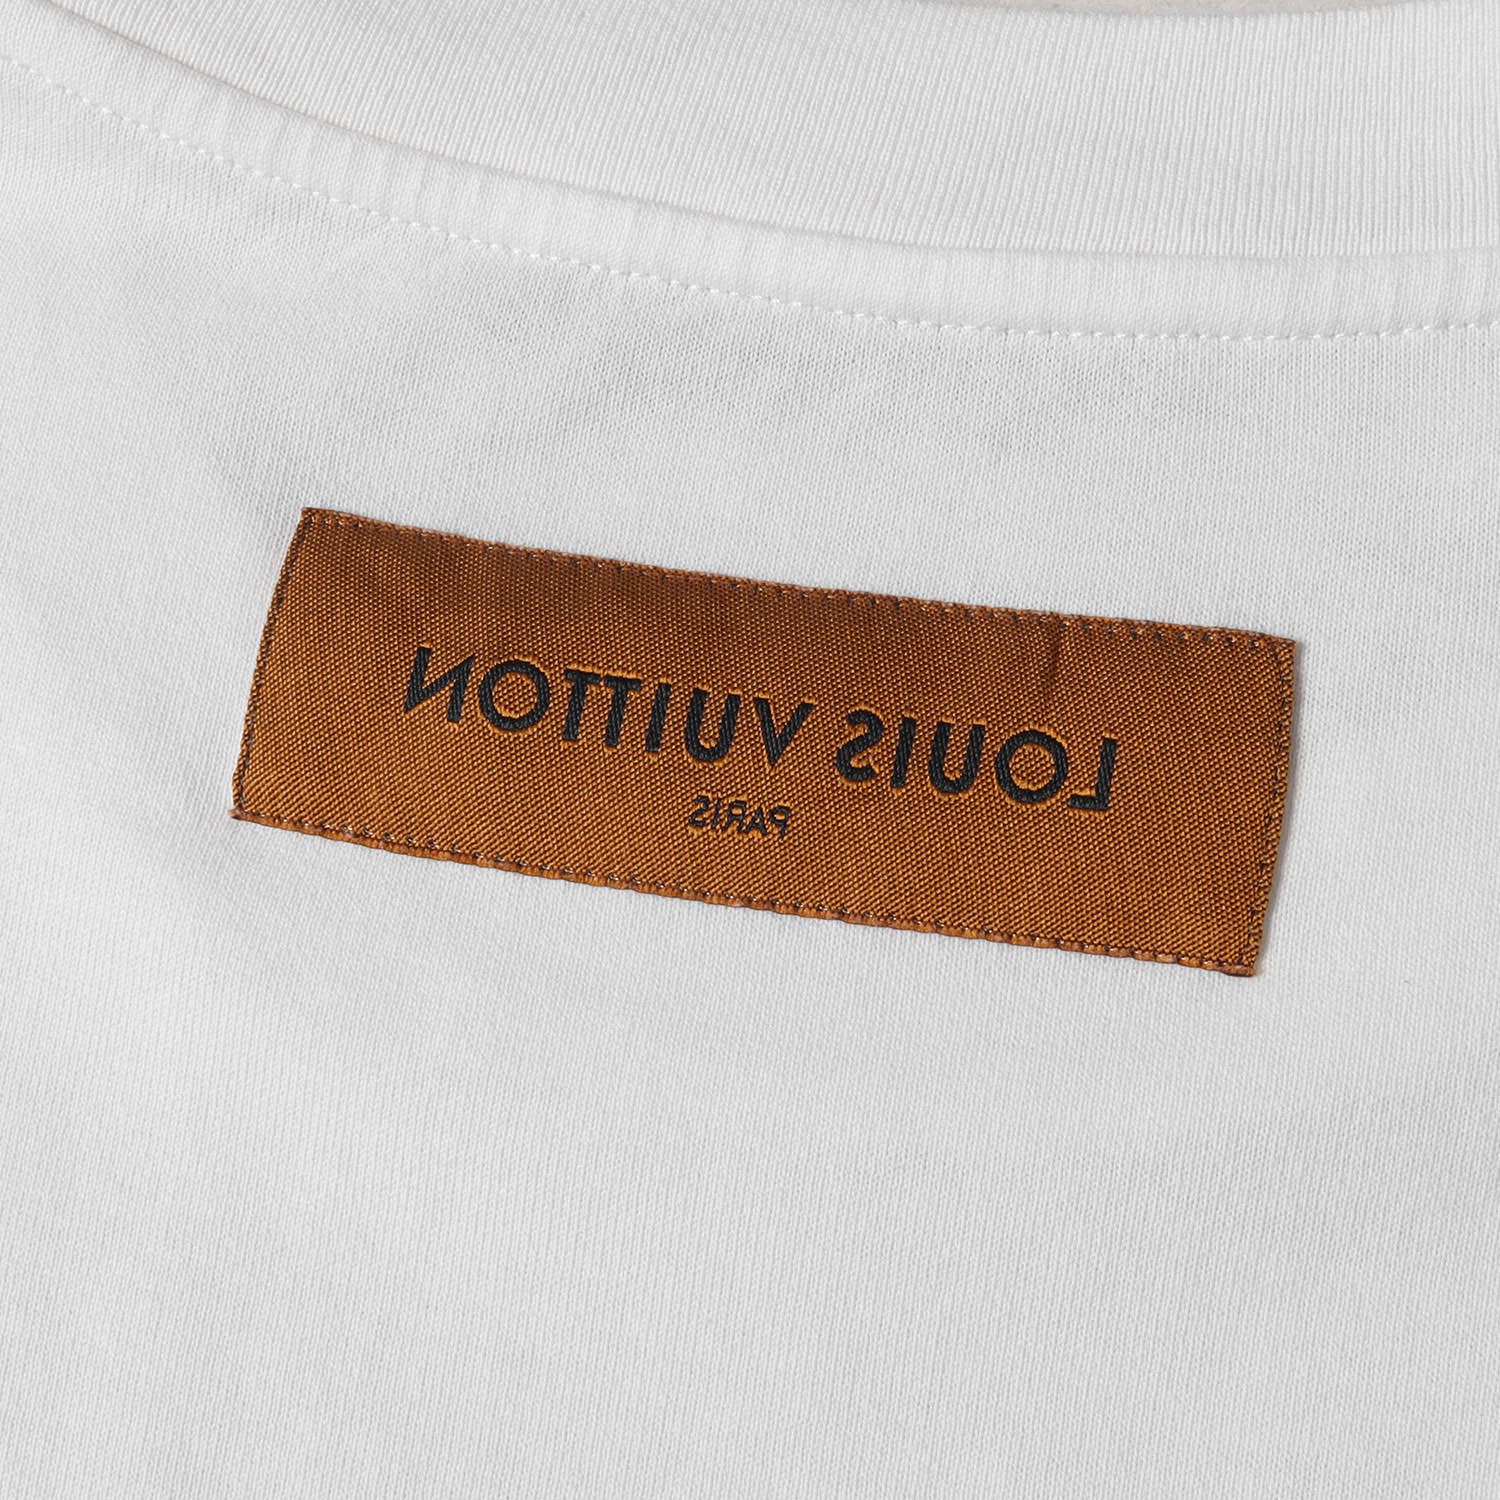 LOUIS VUITTON ルイヴィトン Tシャツ サイズ:L マルチカラーモノグラム RM202M NPG HJY01W クルーネック 半袖  ヴァージル・アブロー 20AW ホワイト 白 トップス カットソー ブランド イタリア製